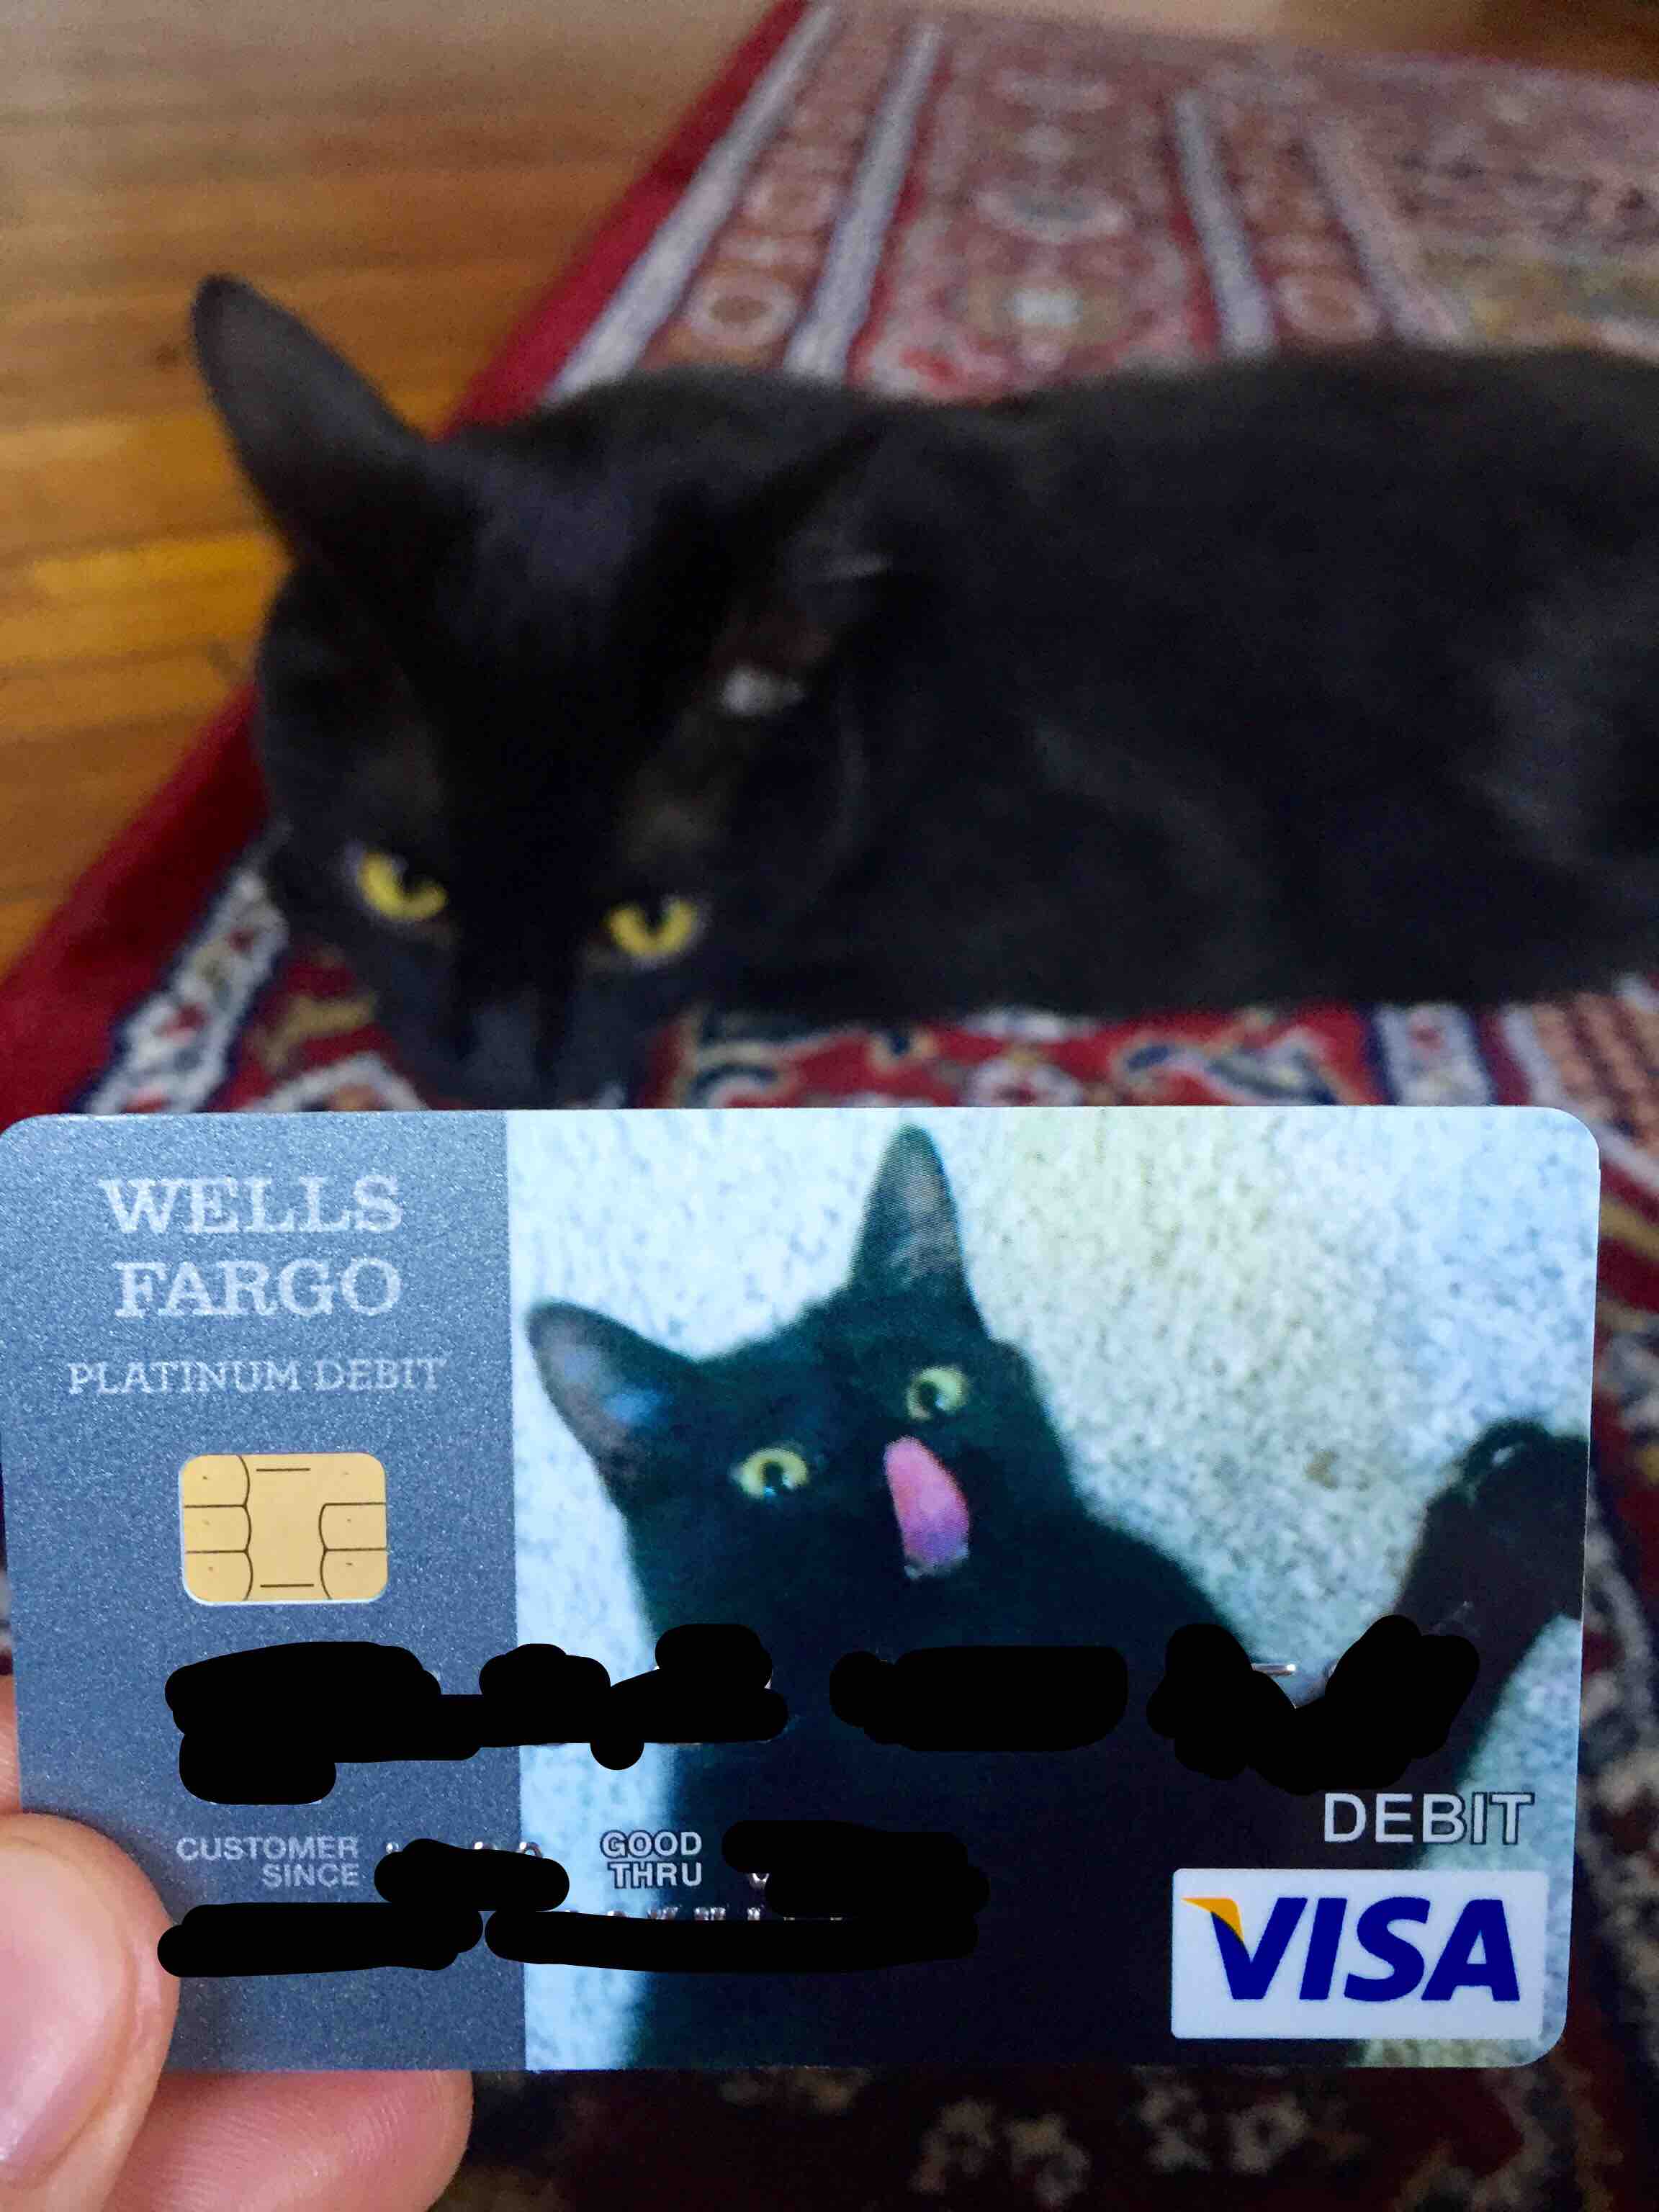 funny debit card - Wells Fargo Platinum Debit Debit | Customer Since Good Thru Visa